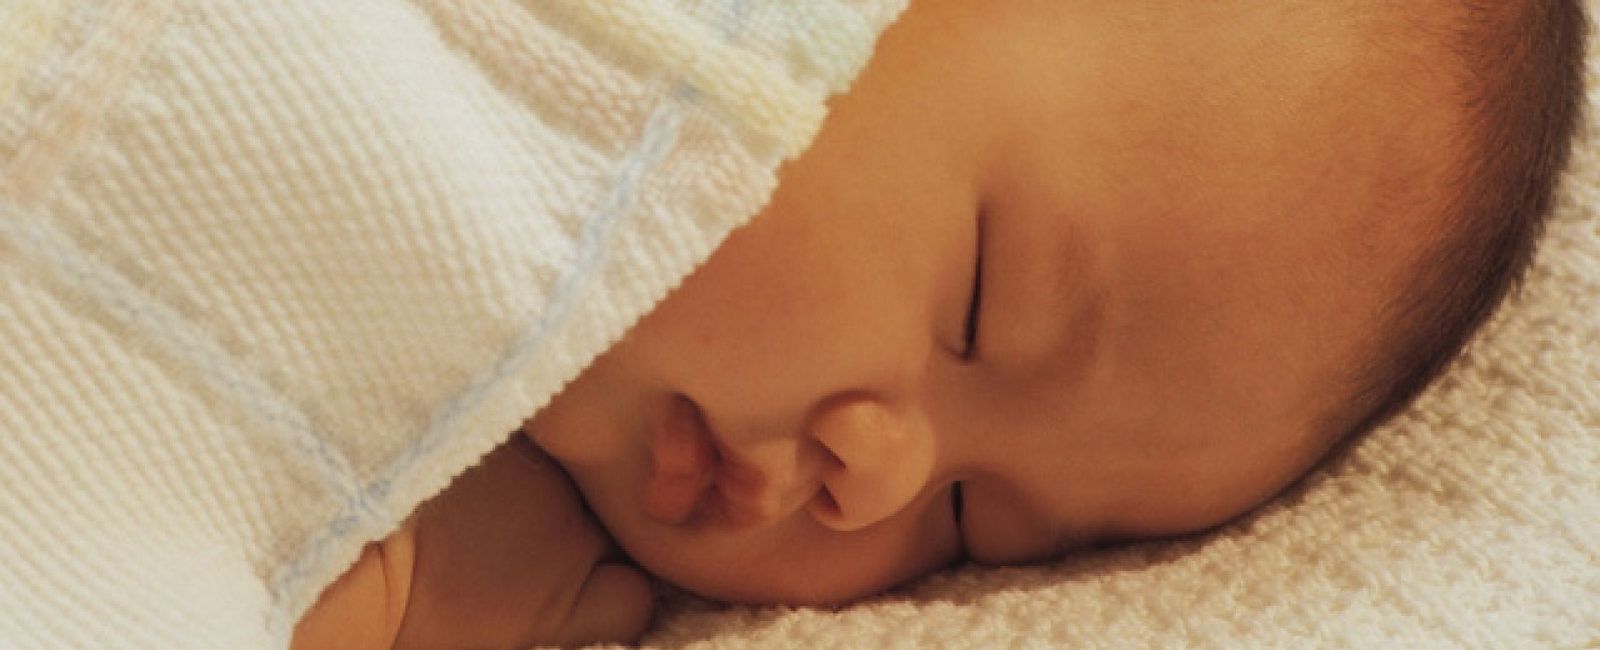 Foto: El bebé no debe dormir con sus padres en la misma cama